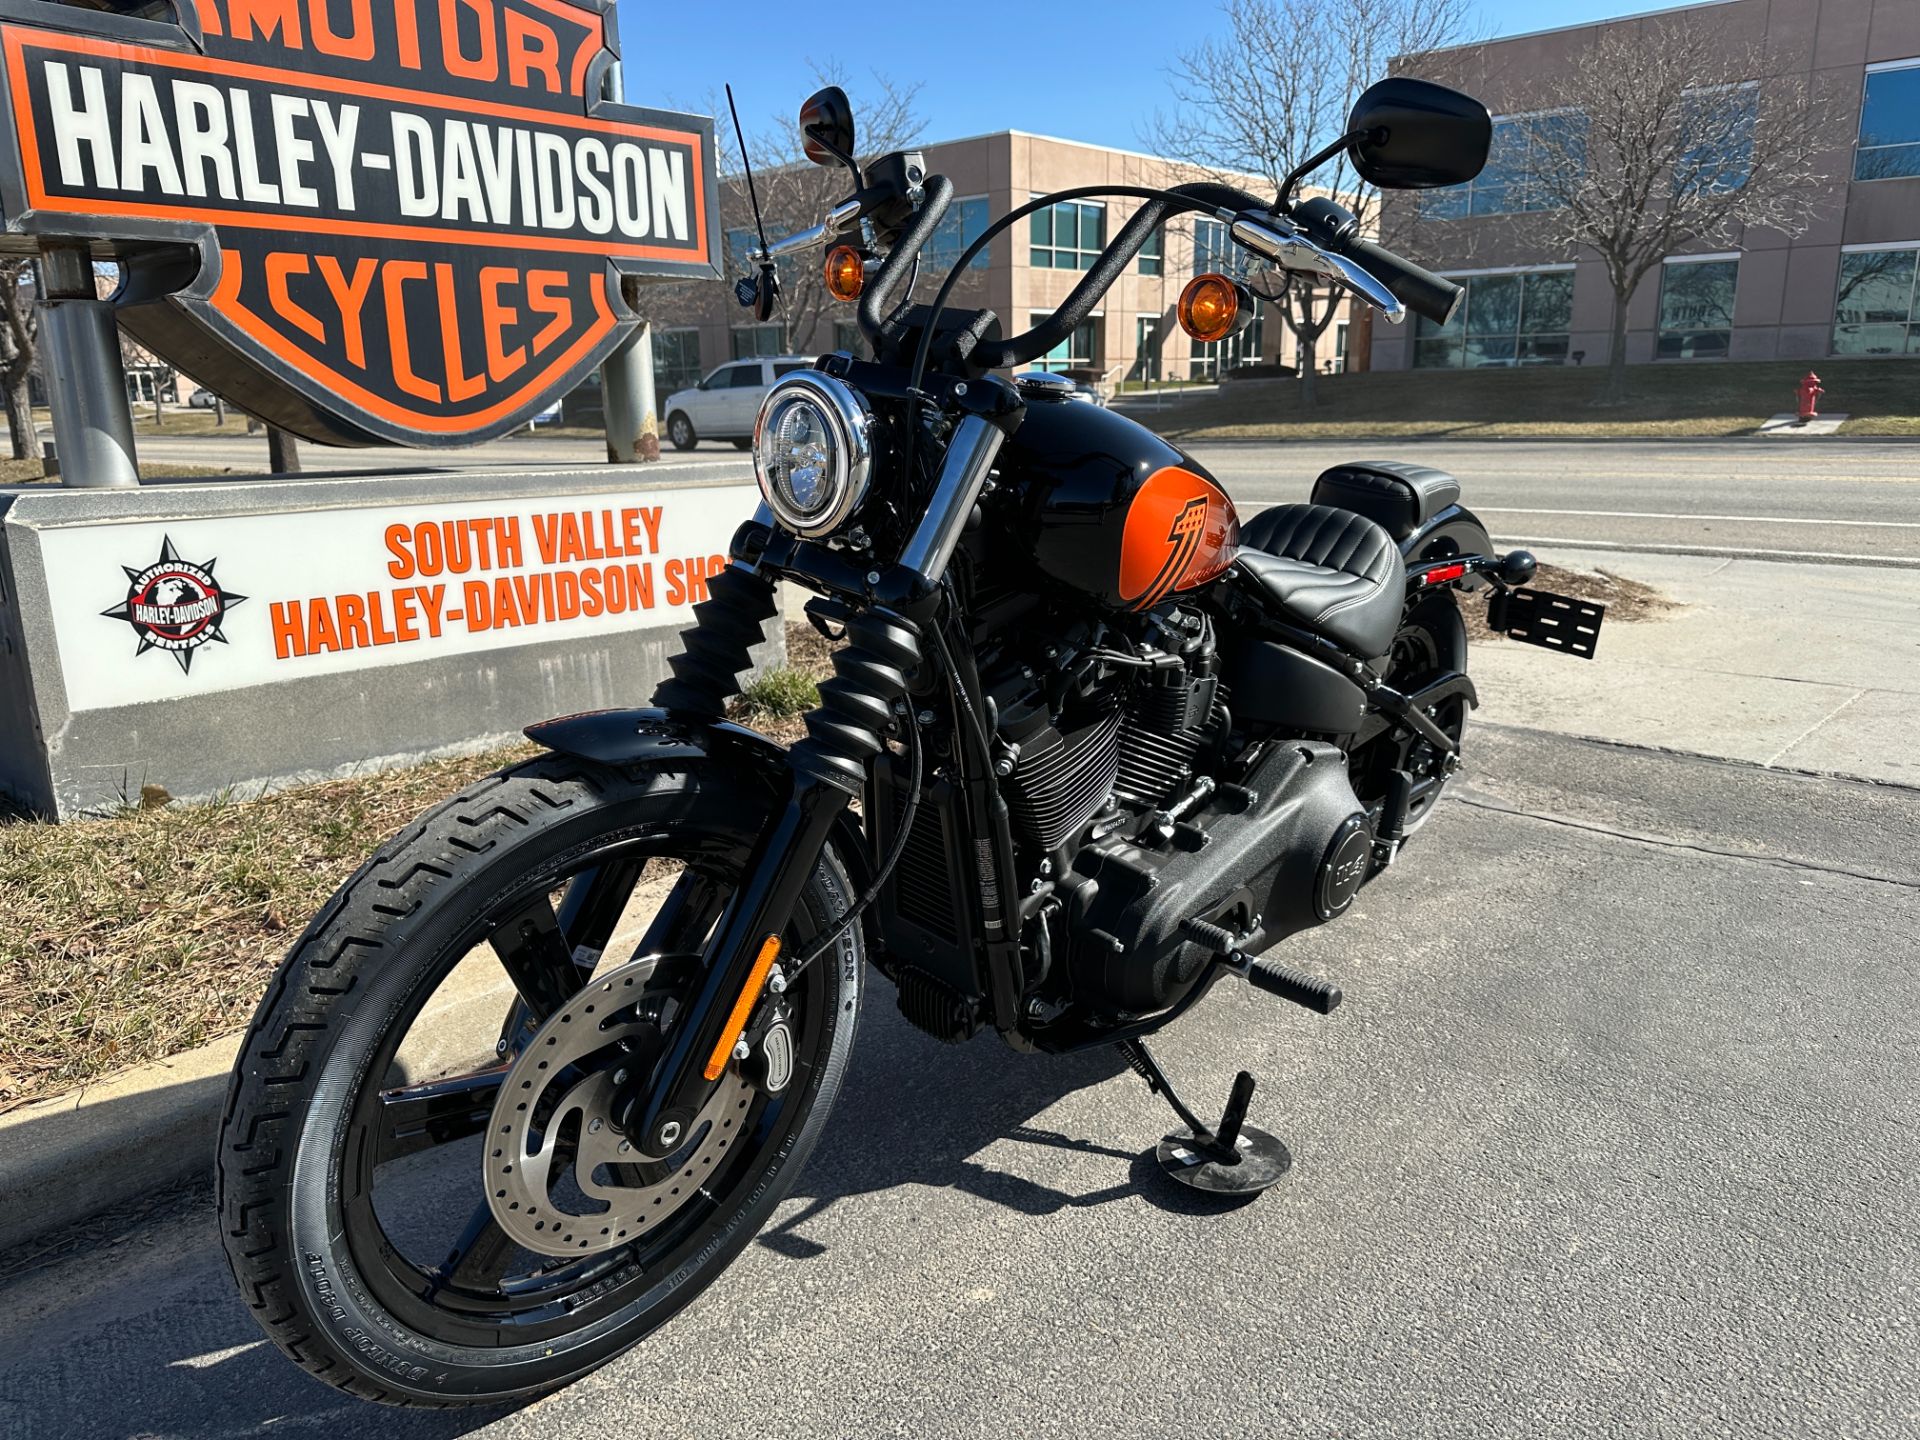 2023 Harley-Davidson Street Bob® 114 in Sandy, Utah - Photo 8